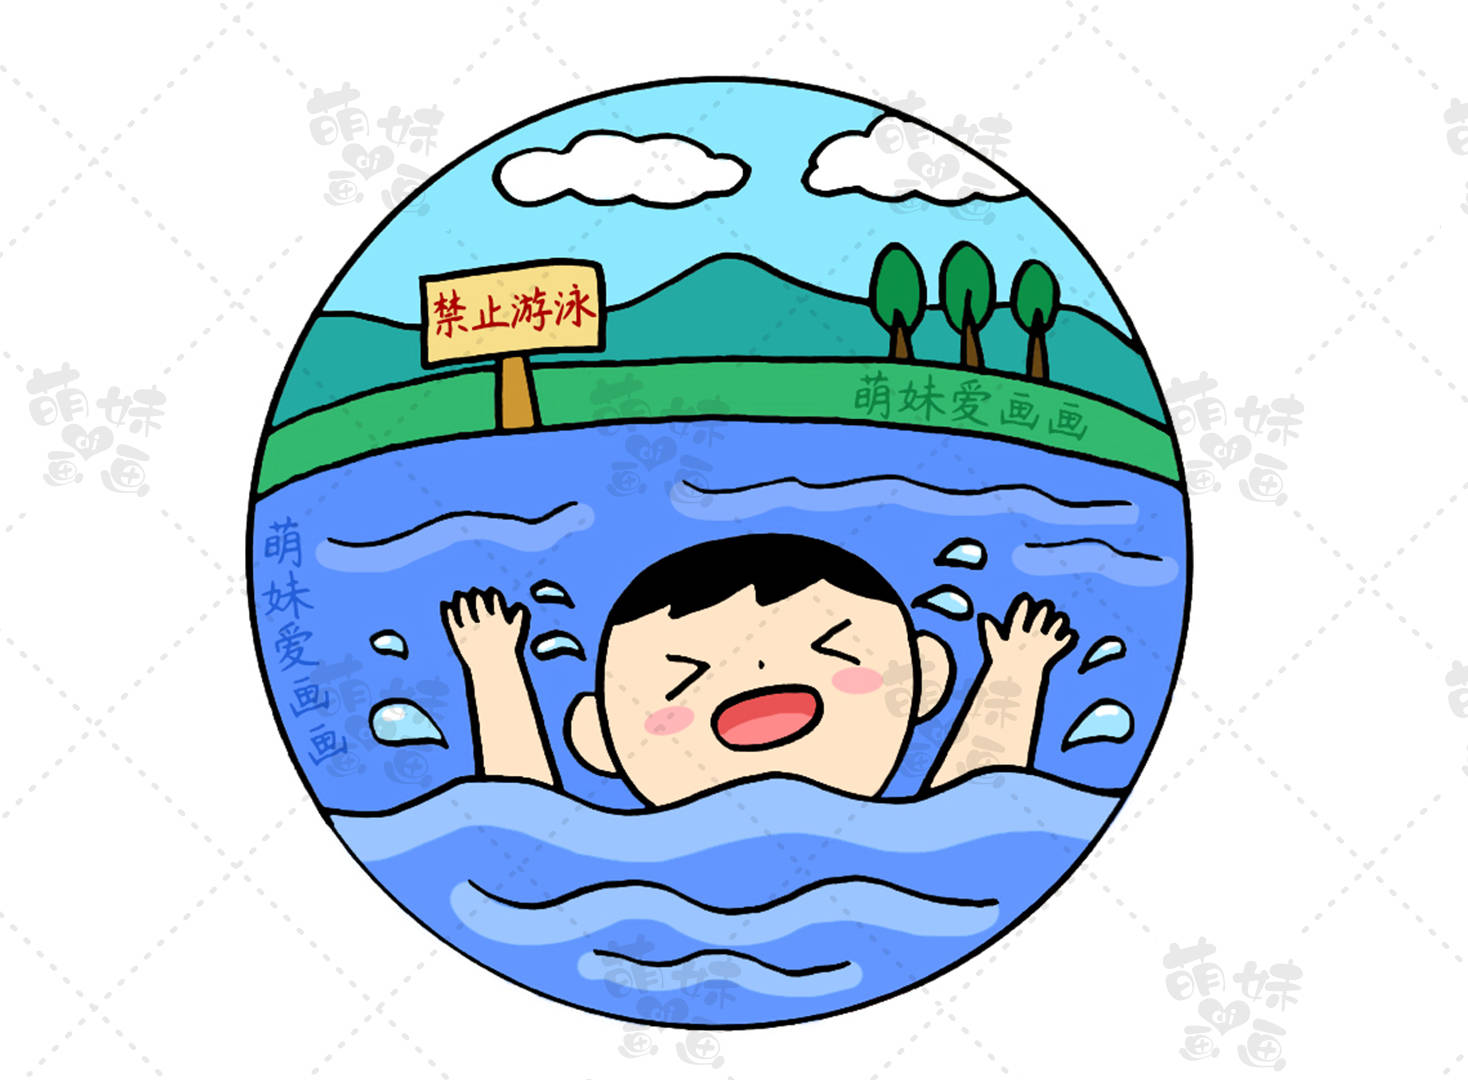 我们绘制一位在危险水域游泳溺水的小男孩,他身后立着禁止游泳的牌子